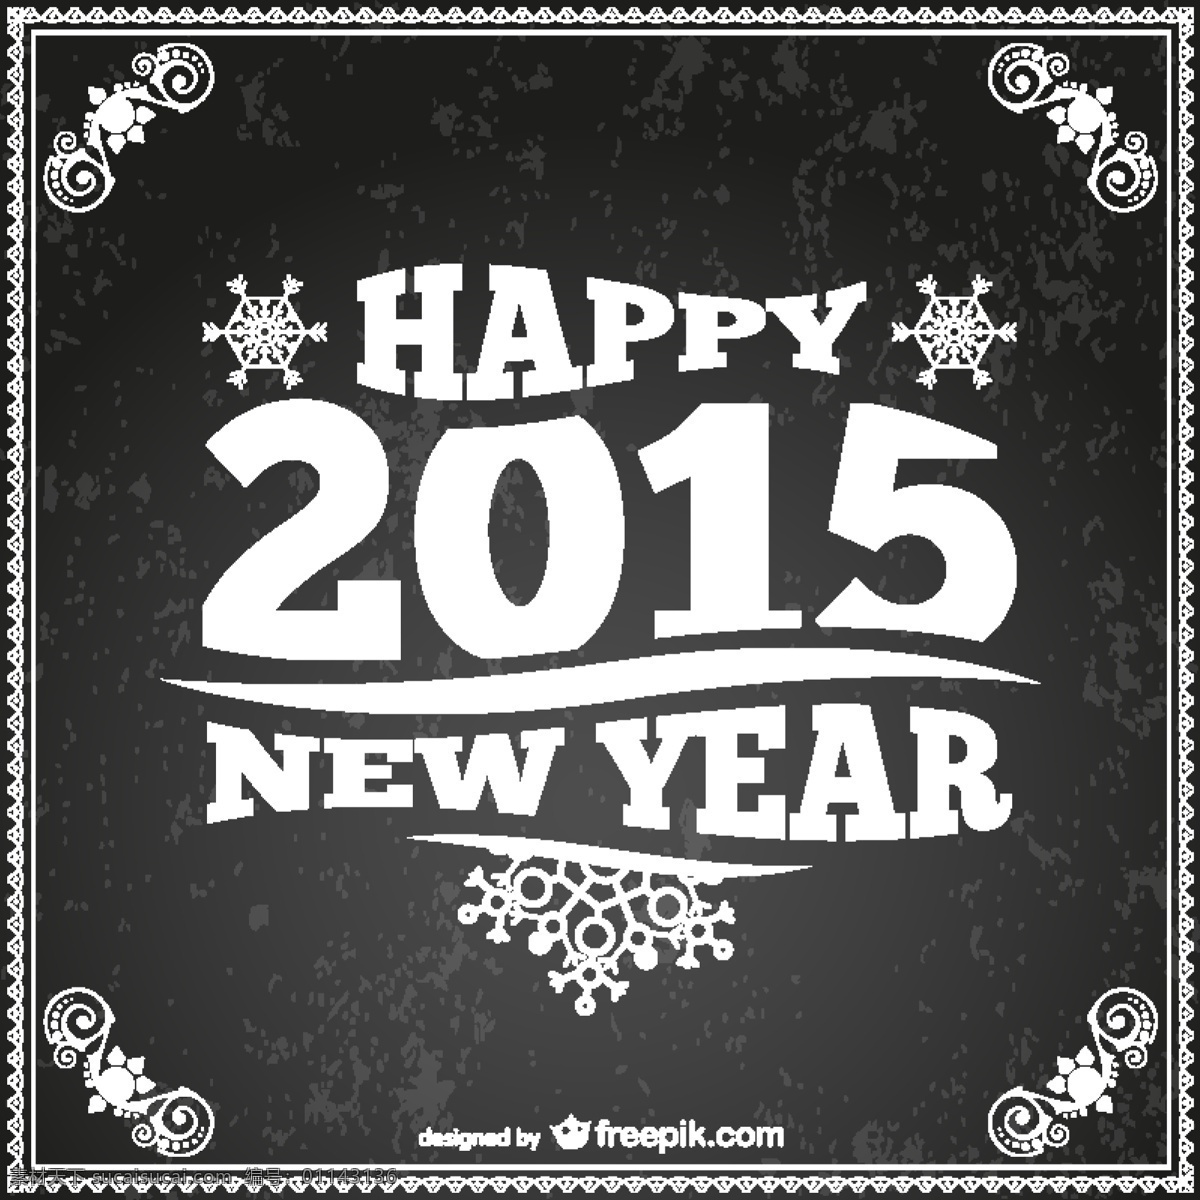 复古 风格 新 年 卡 新年快乐 新年2015 快乐 水平 黑色